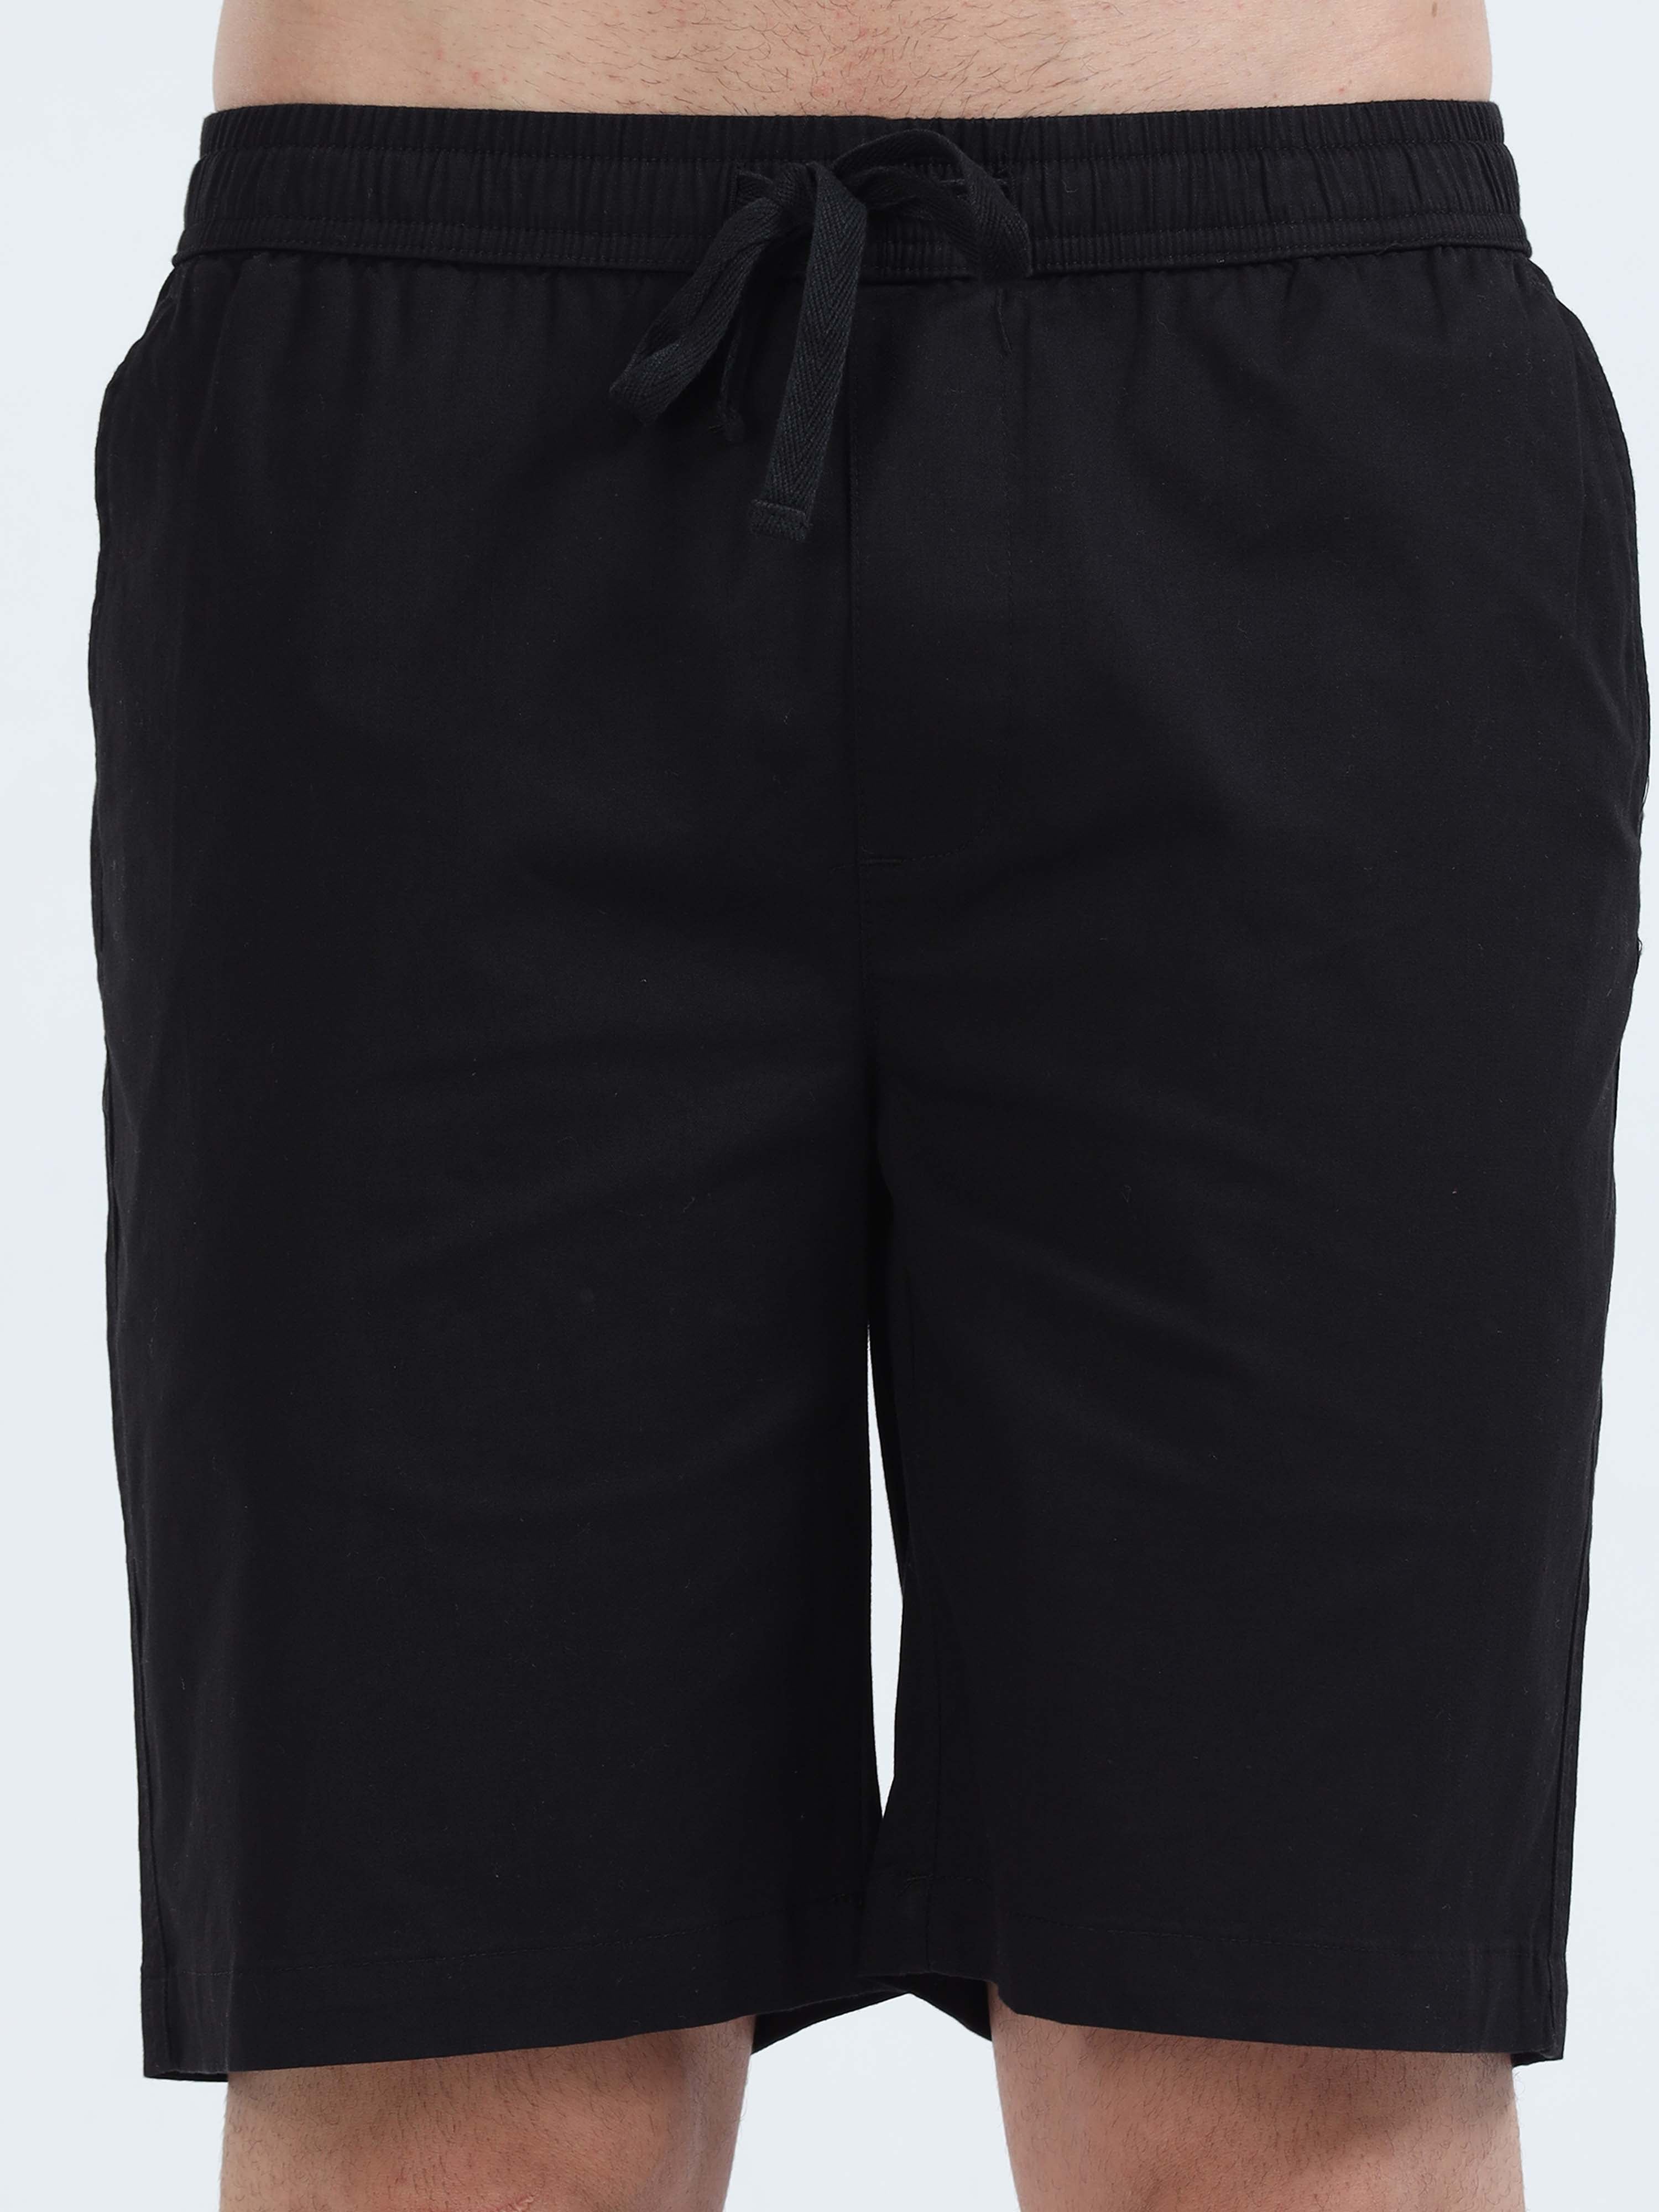 Soft Cotton Black Basic Shorts